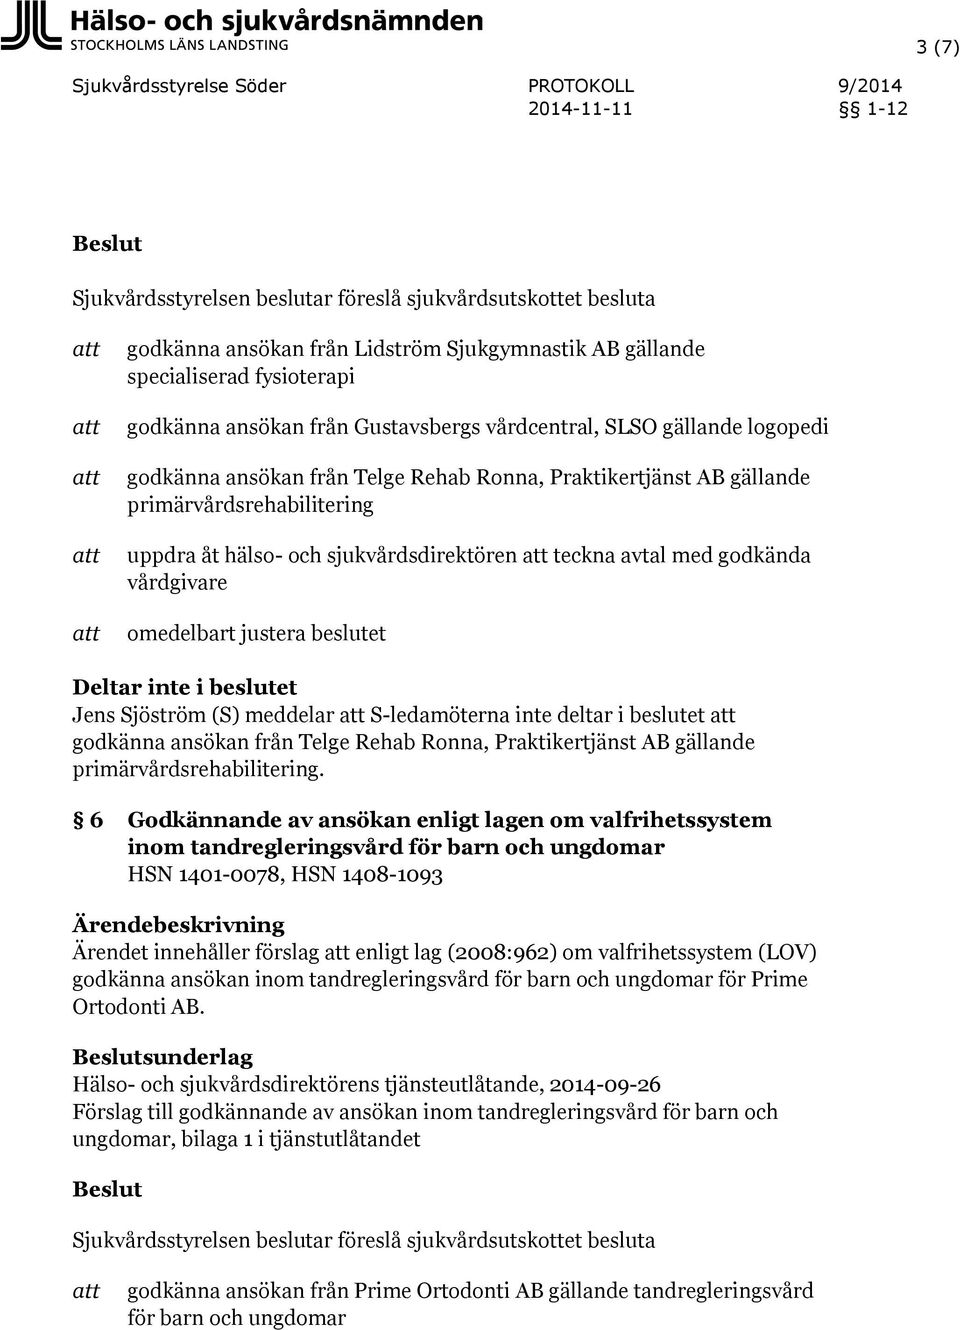 Sjöström (S) meddelar S-ledamöterna inte deltar i beslutet godkänna ansökan från Telge Rehab Ronna, Praktikertjänst AB gällande primärvårdsrehabilitering.